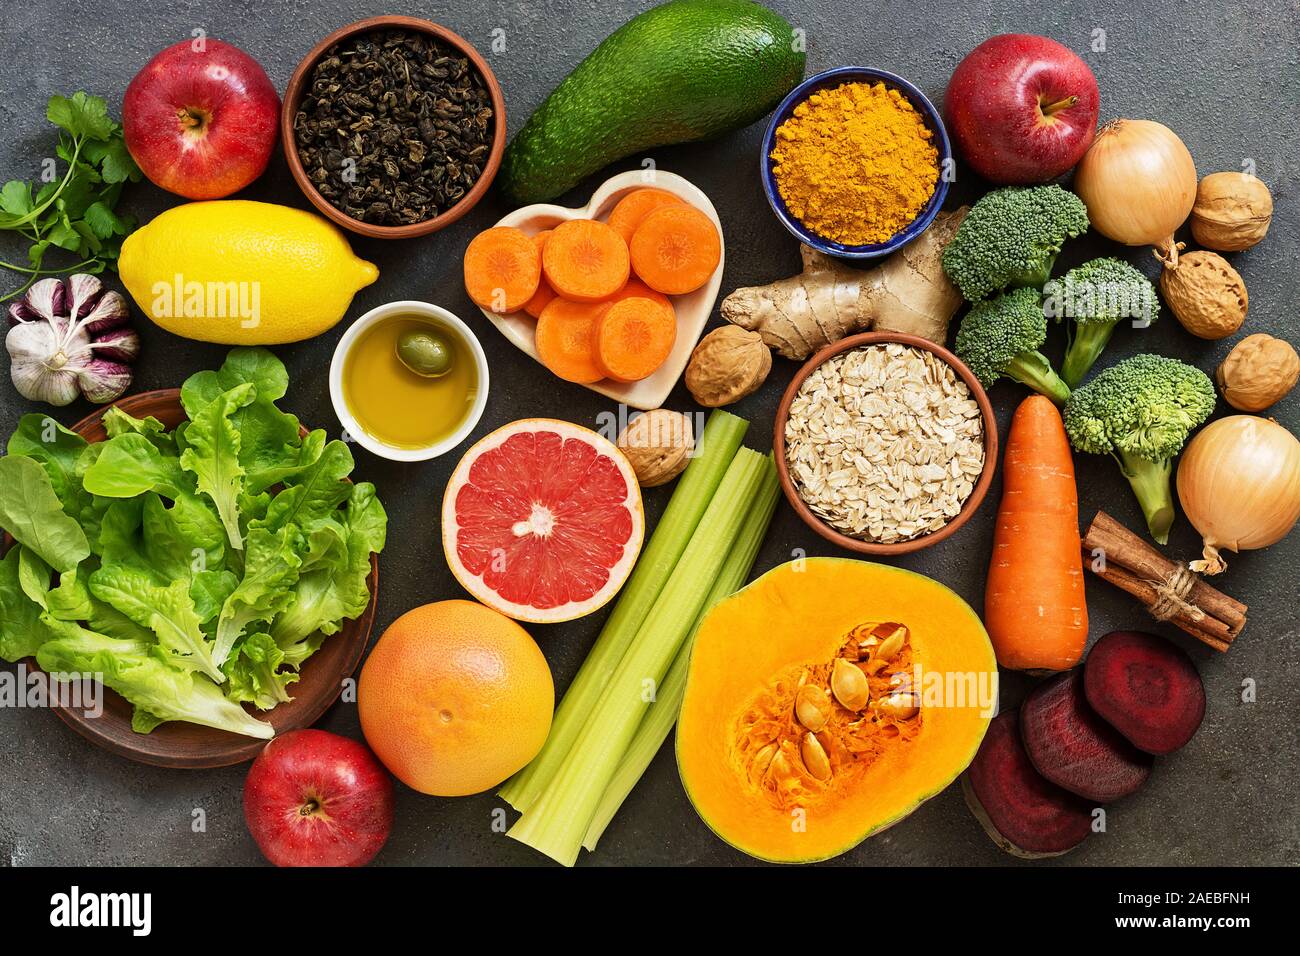 Leber Entgiftung Ernährung Food Konzept. Gesunde Ernährung für die Leber,  Früchte, Gemüse, Nüsse, Olivenöl, Zitrusfrüchte, grüner Tee, Kurkuma,  Hafer. Ansicht von oben Stockfotografie - Alamy